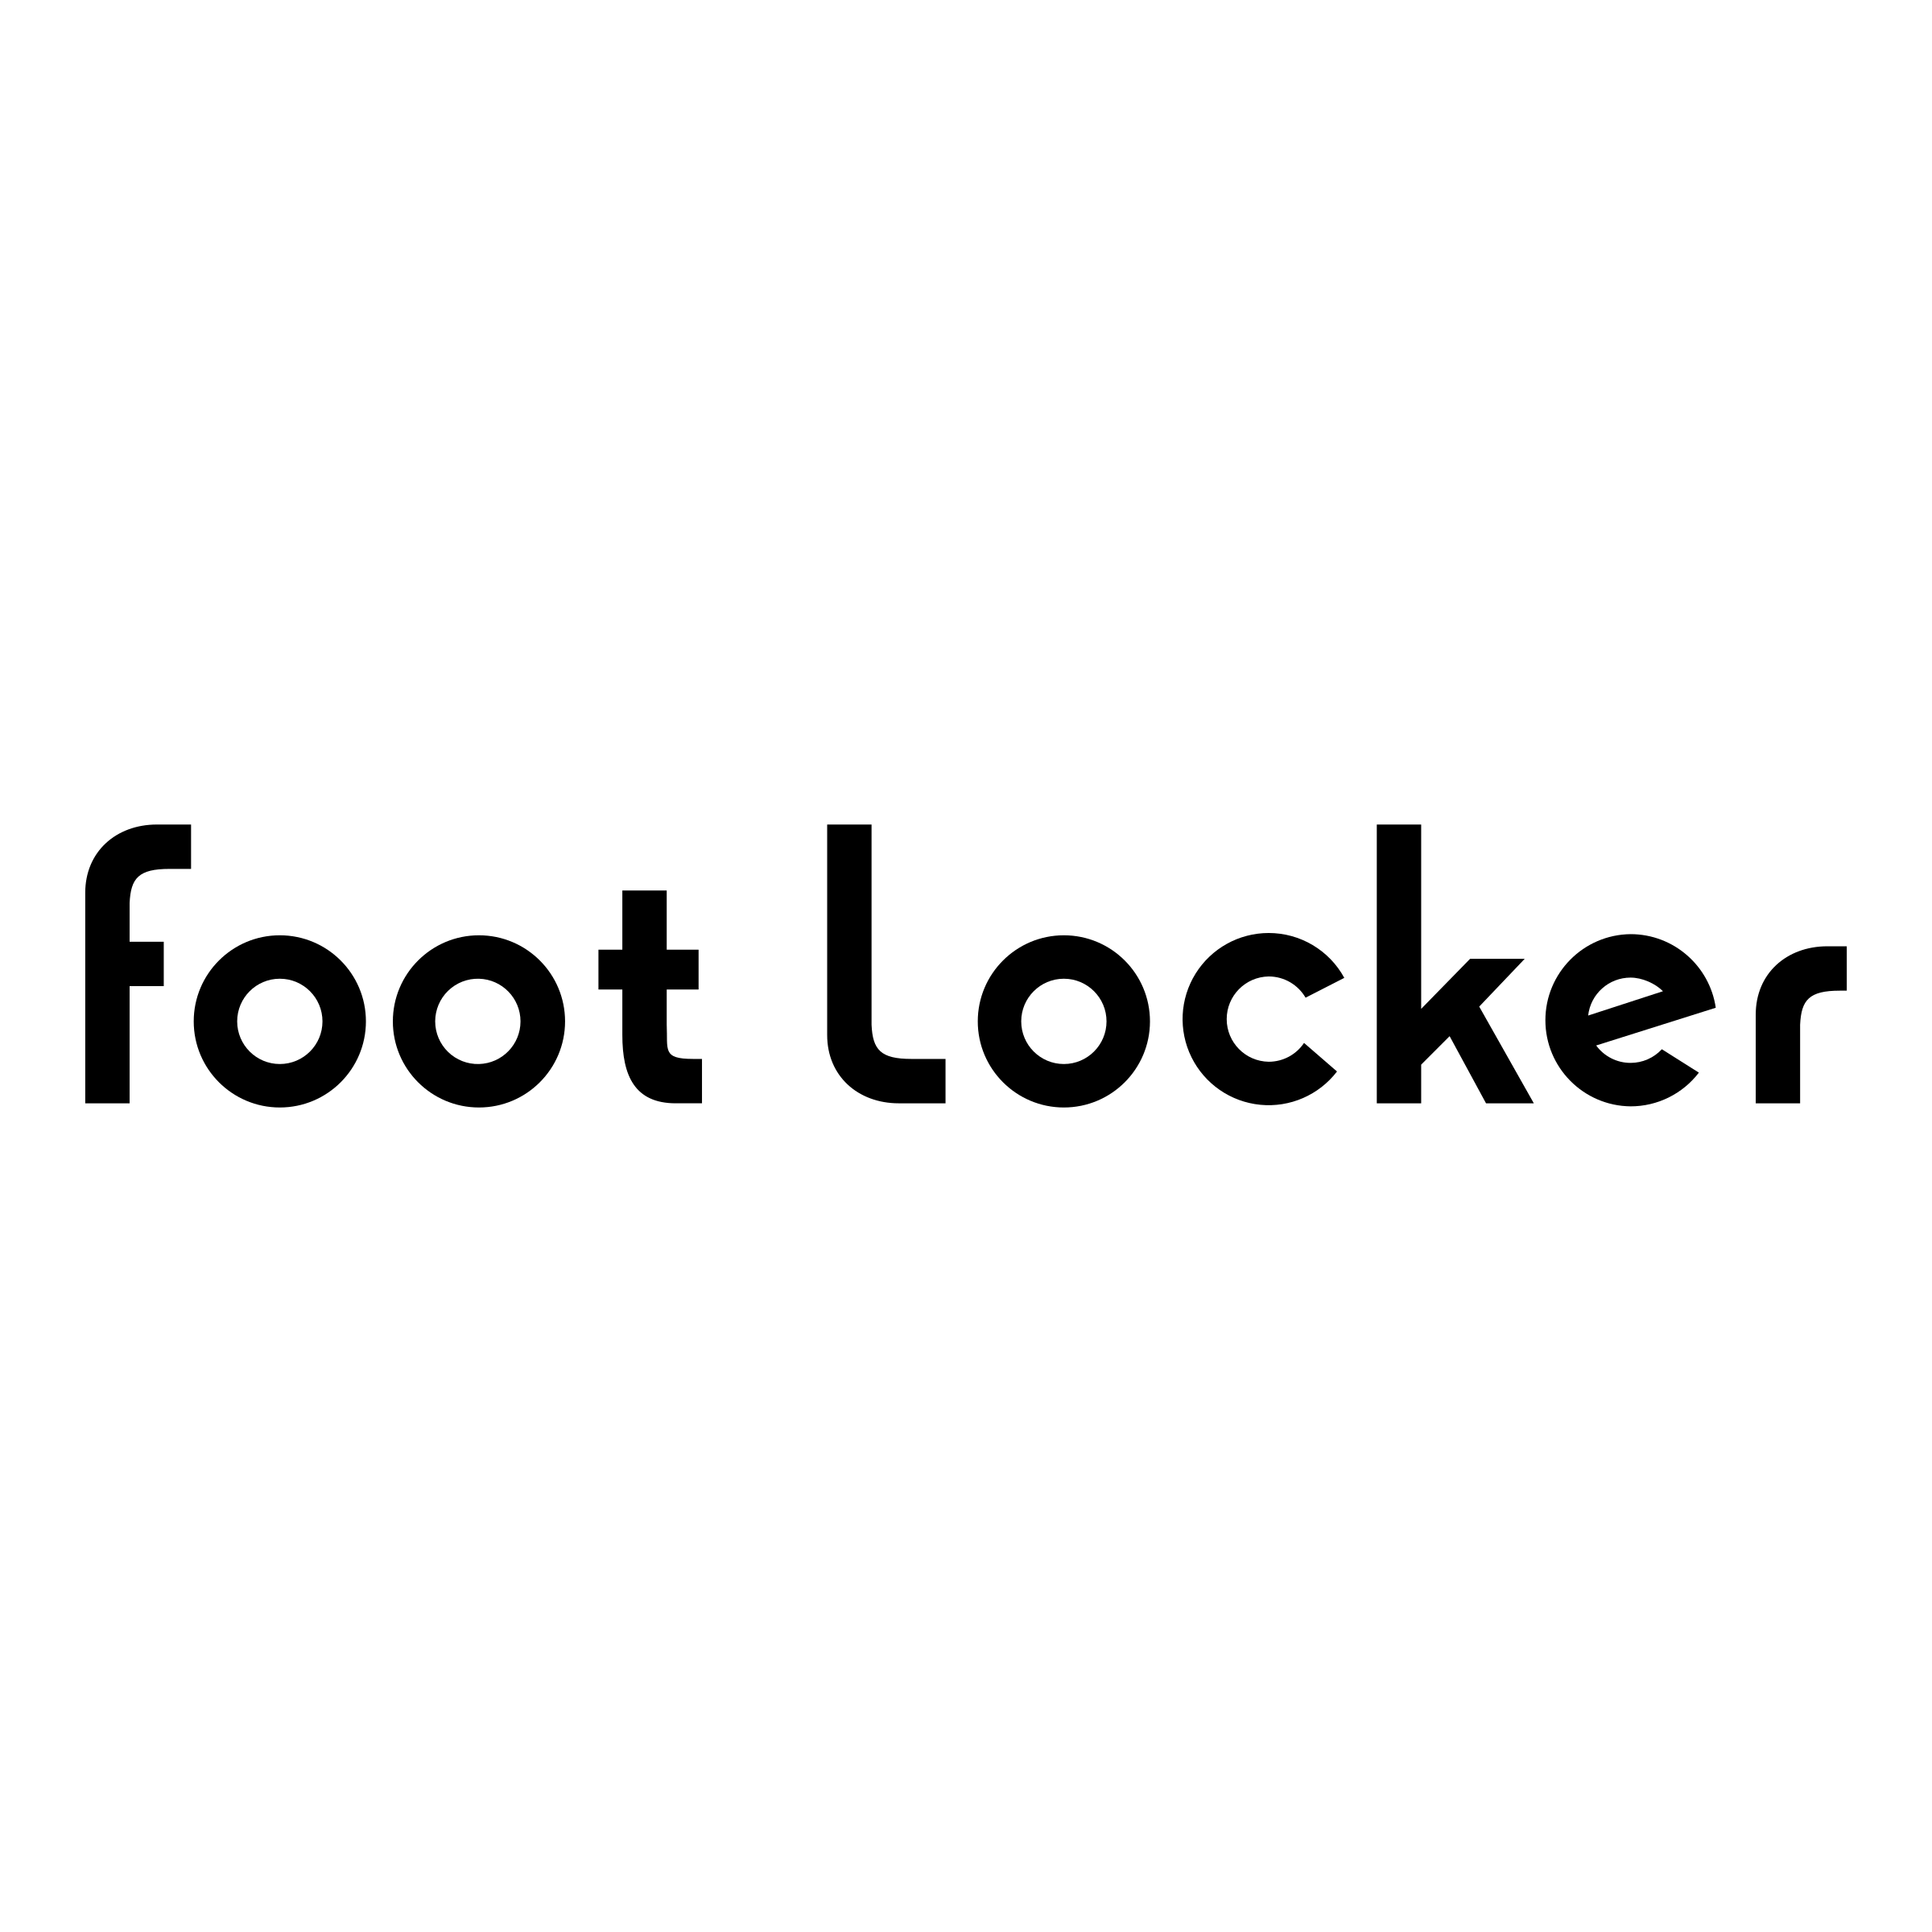 Footlocker Logo - Foot Locker Logo PNG Transparent & SVG Vector - Freebie Supply